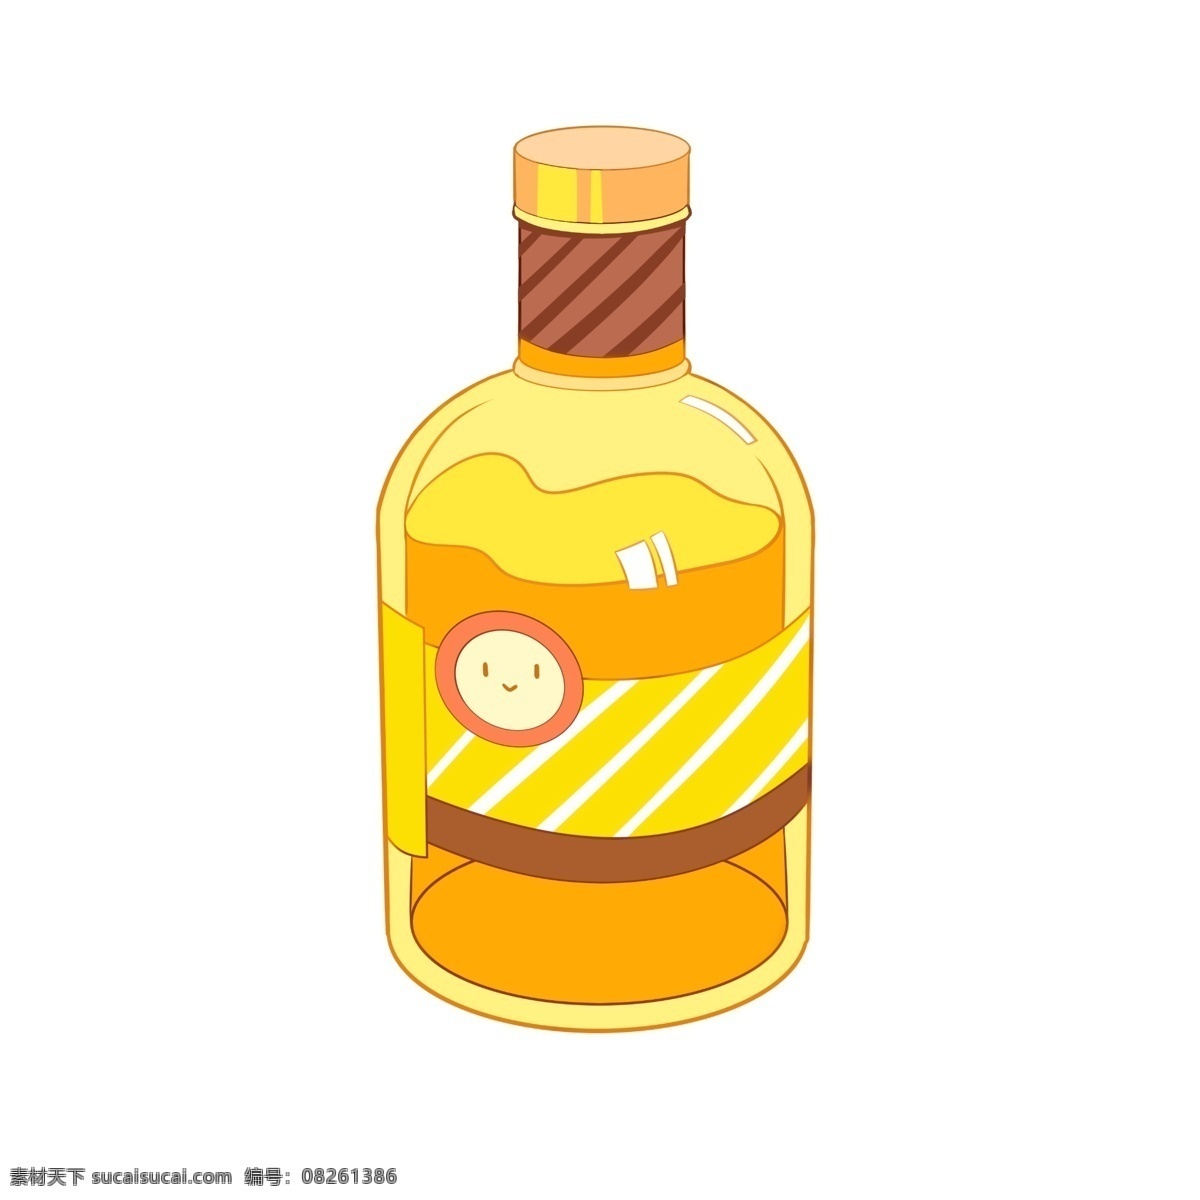 黄色 啤酒瓶 图案 液体 喝酒 酒瓶子